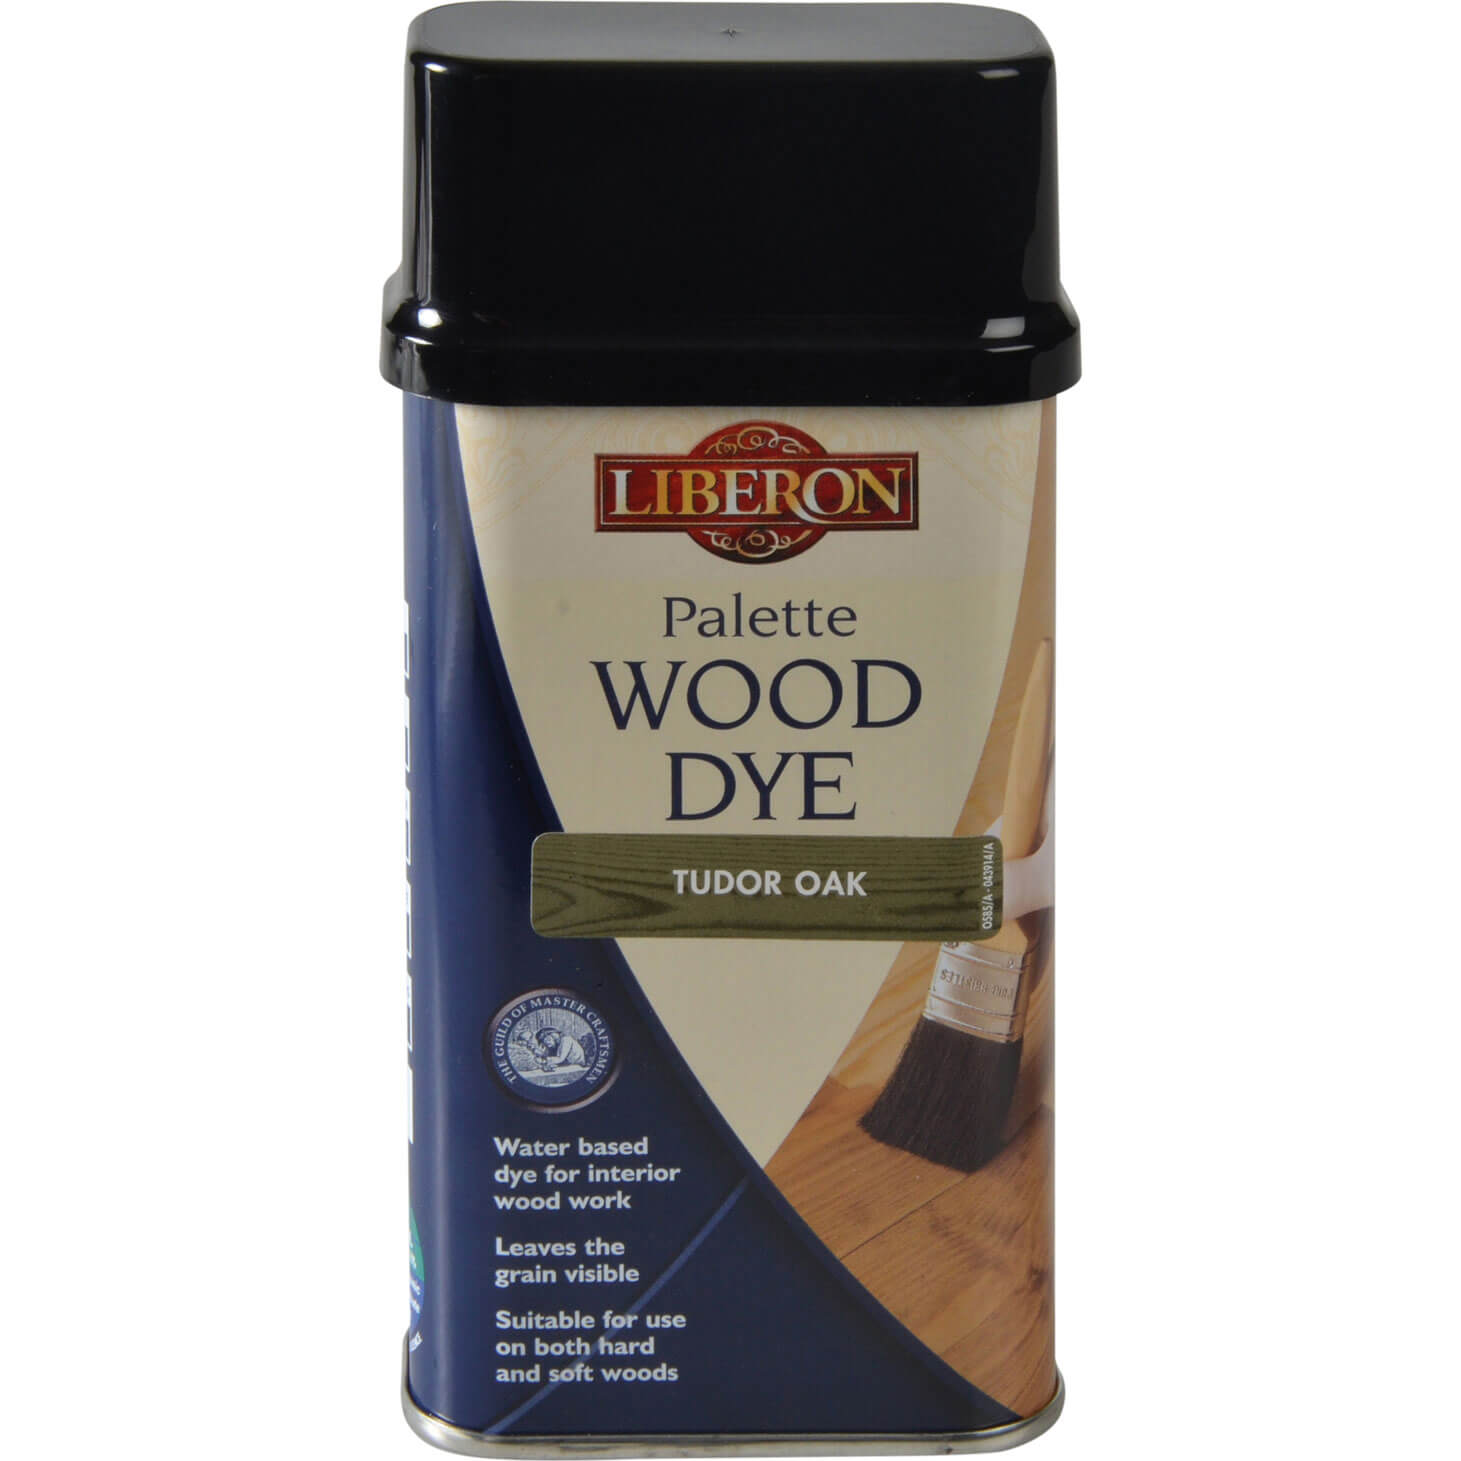 Image of Liberon Palette Wood Dye Tudor Oak 250ml